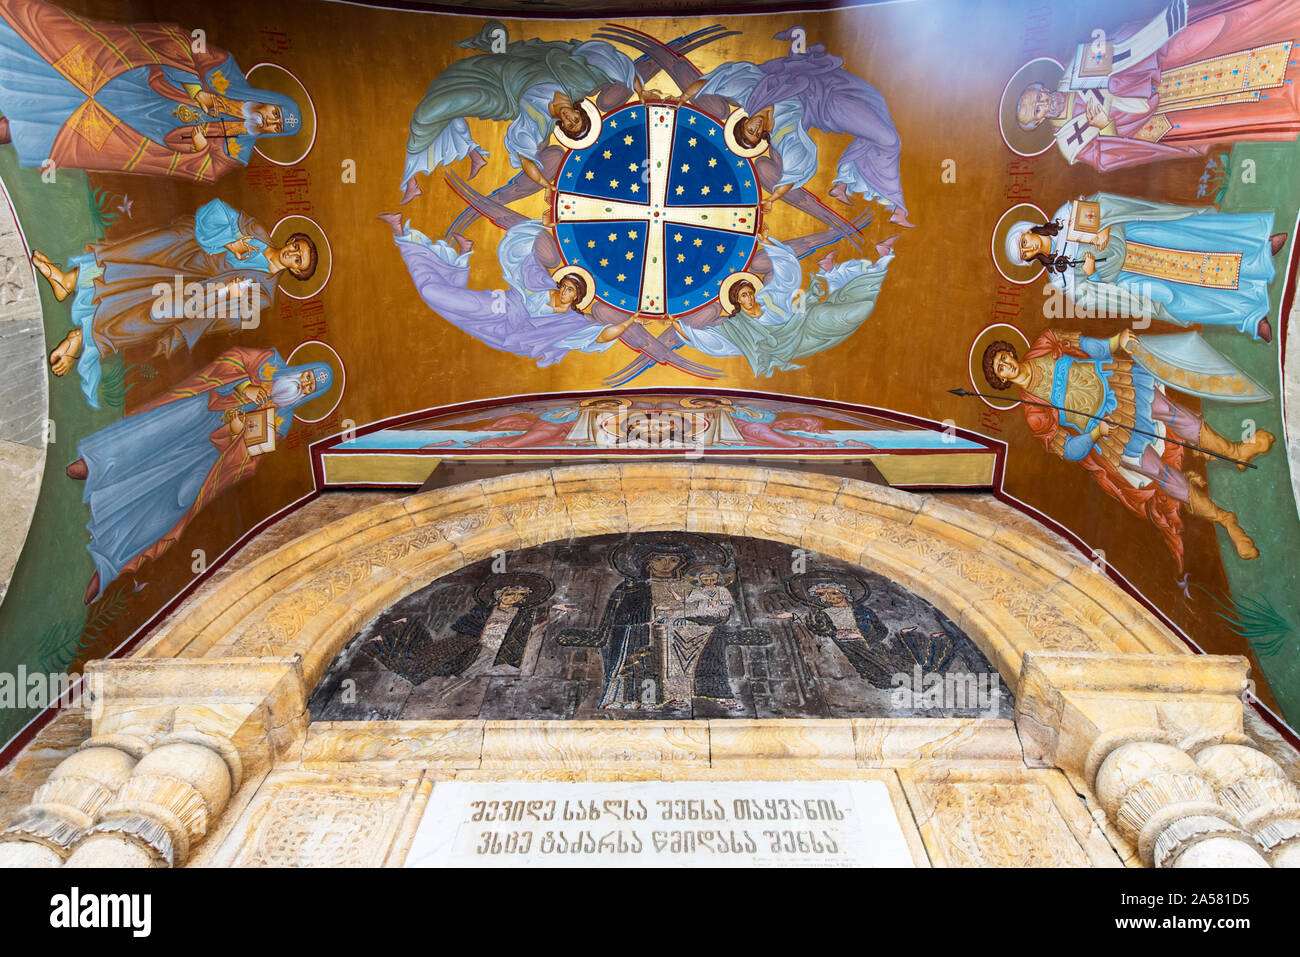 Innenraum des Sioni Dom (Kathedrale der Heiligen Maria von Zion). Tiflis, Georgien. Kaukasus Stockfoto